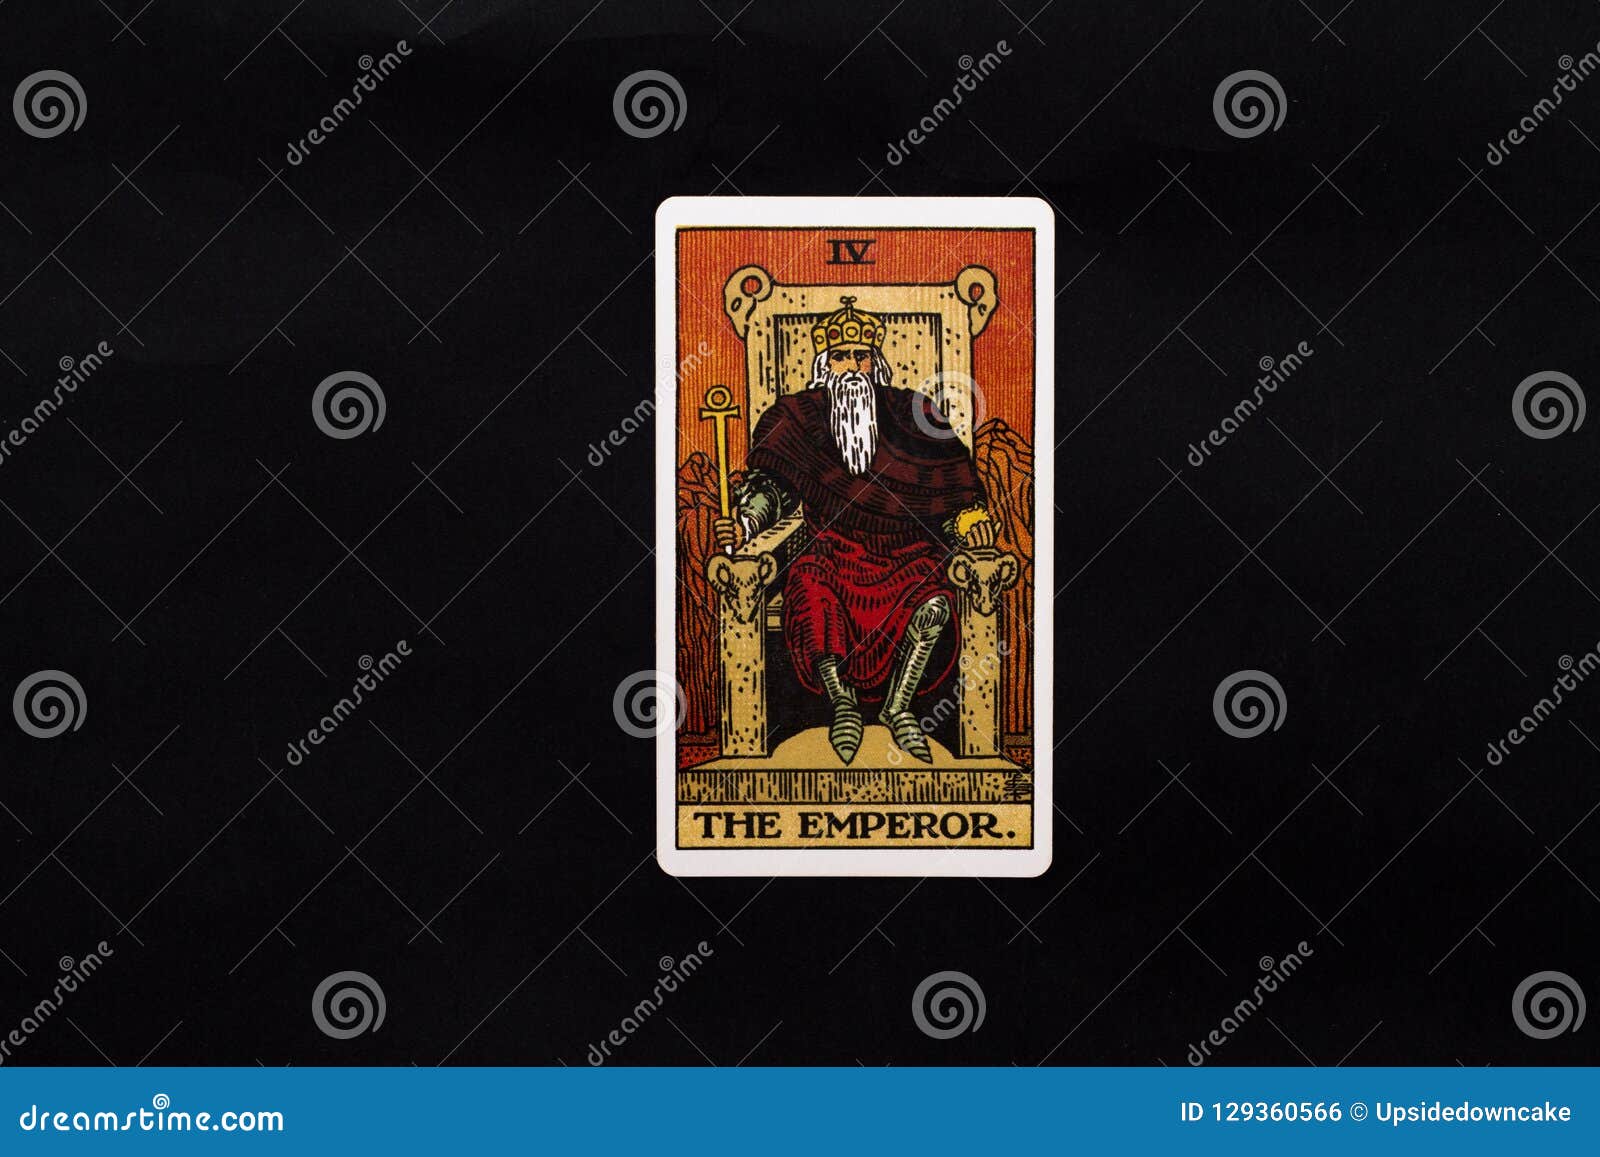 the emperor major arcana tarot card